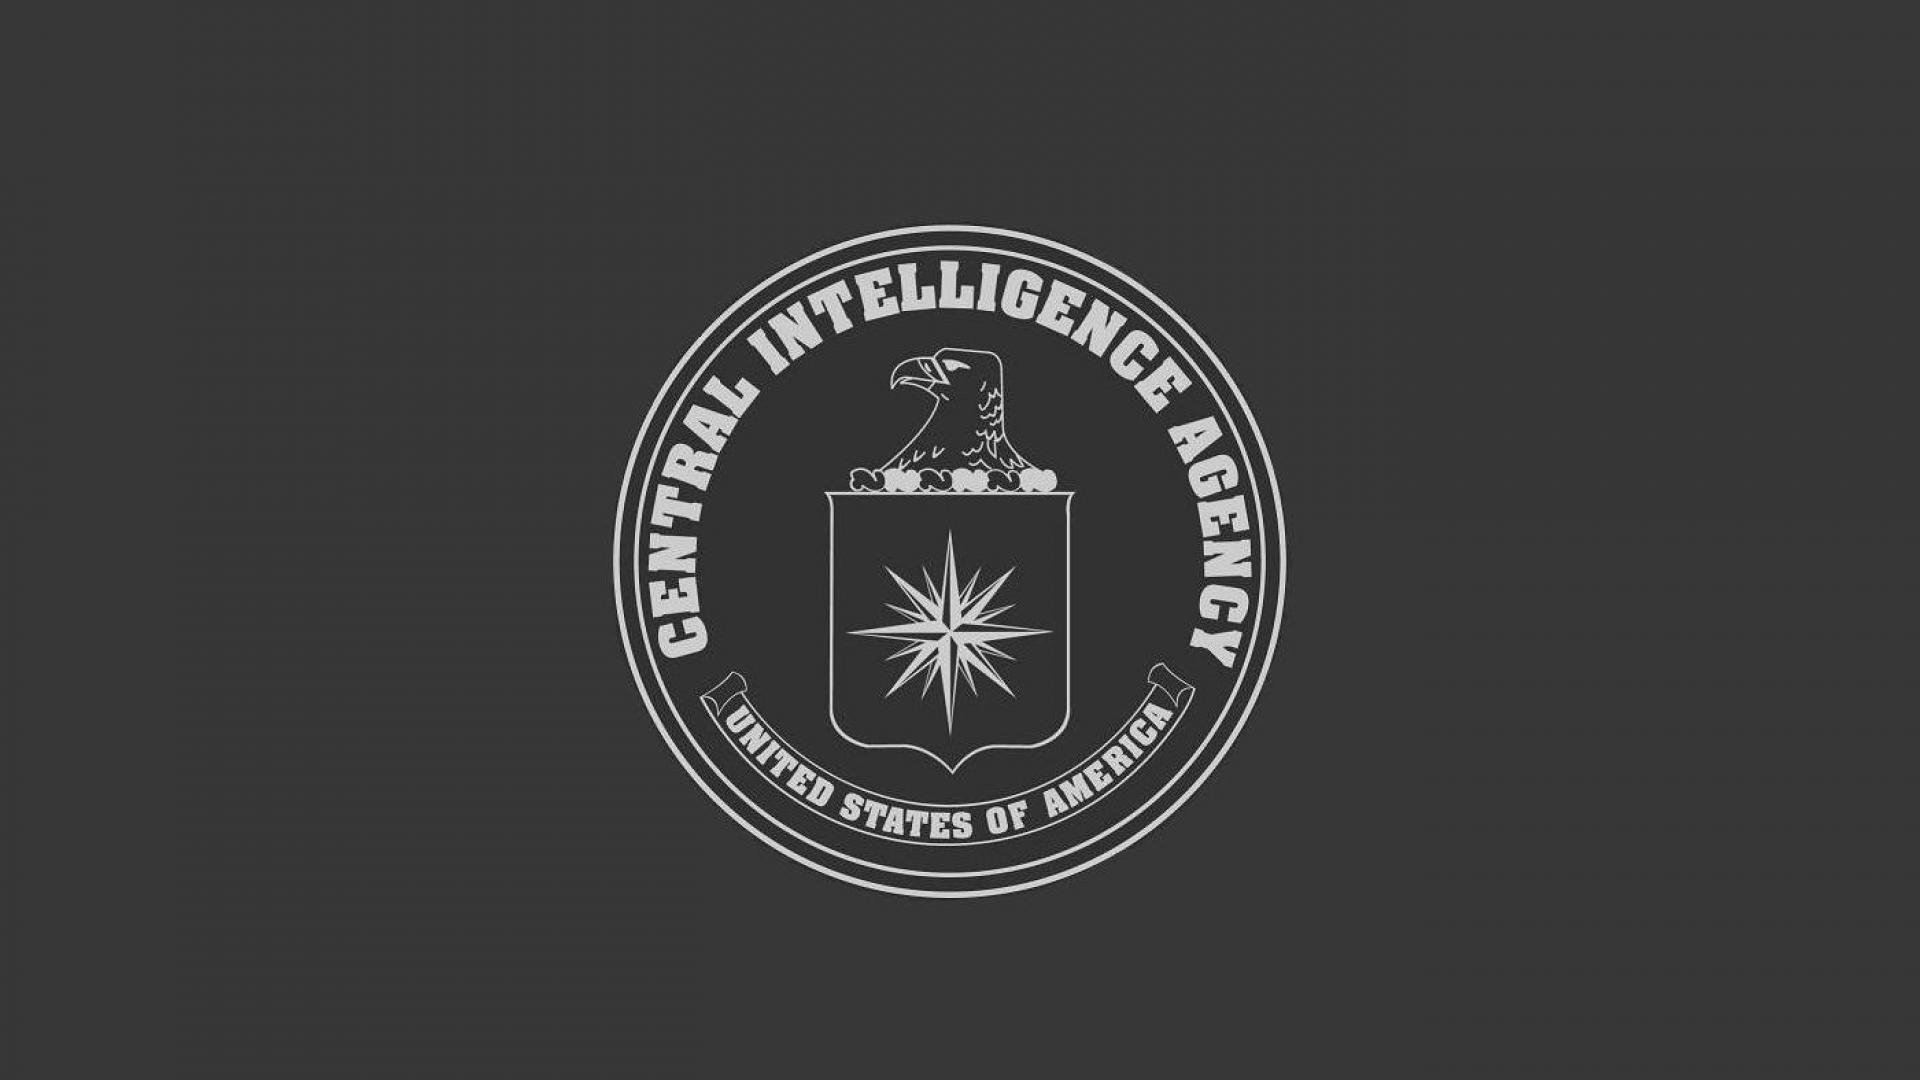 Центральное разведывательное управление США лого